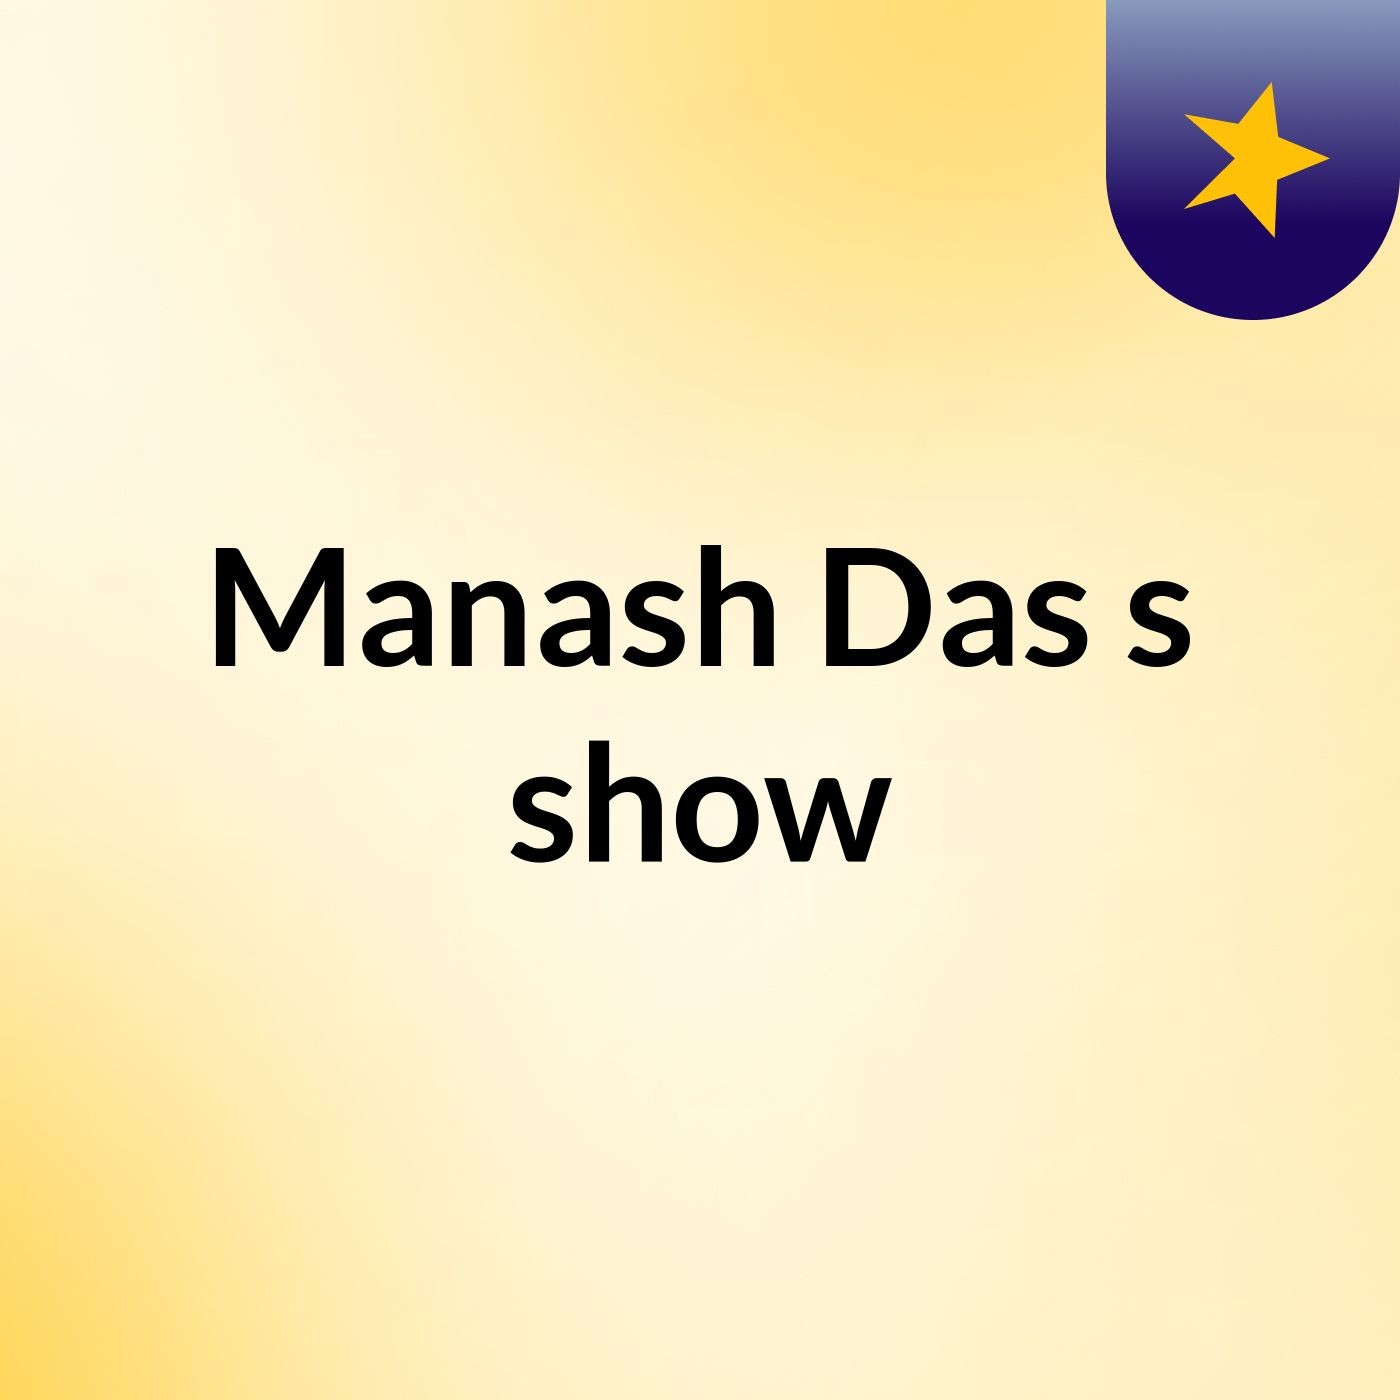 Manash Das's show